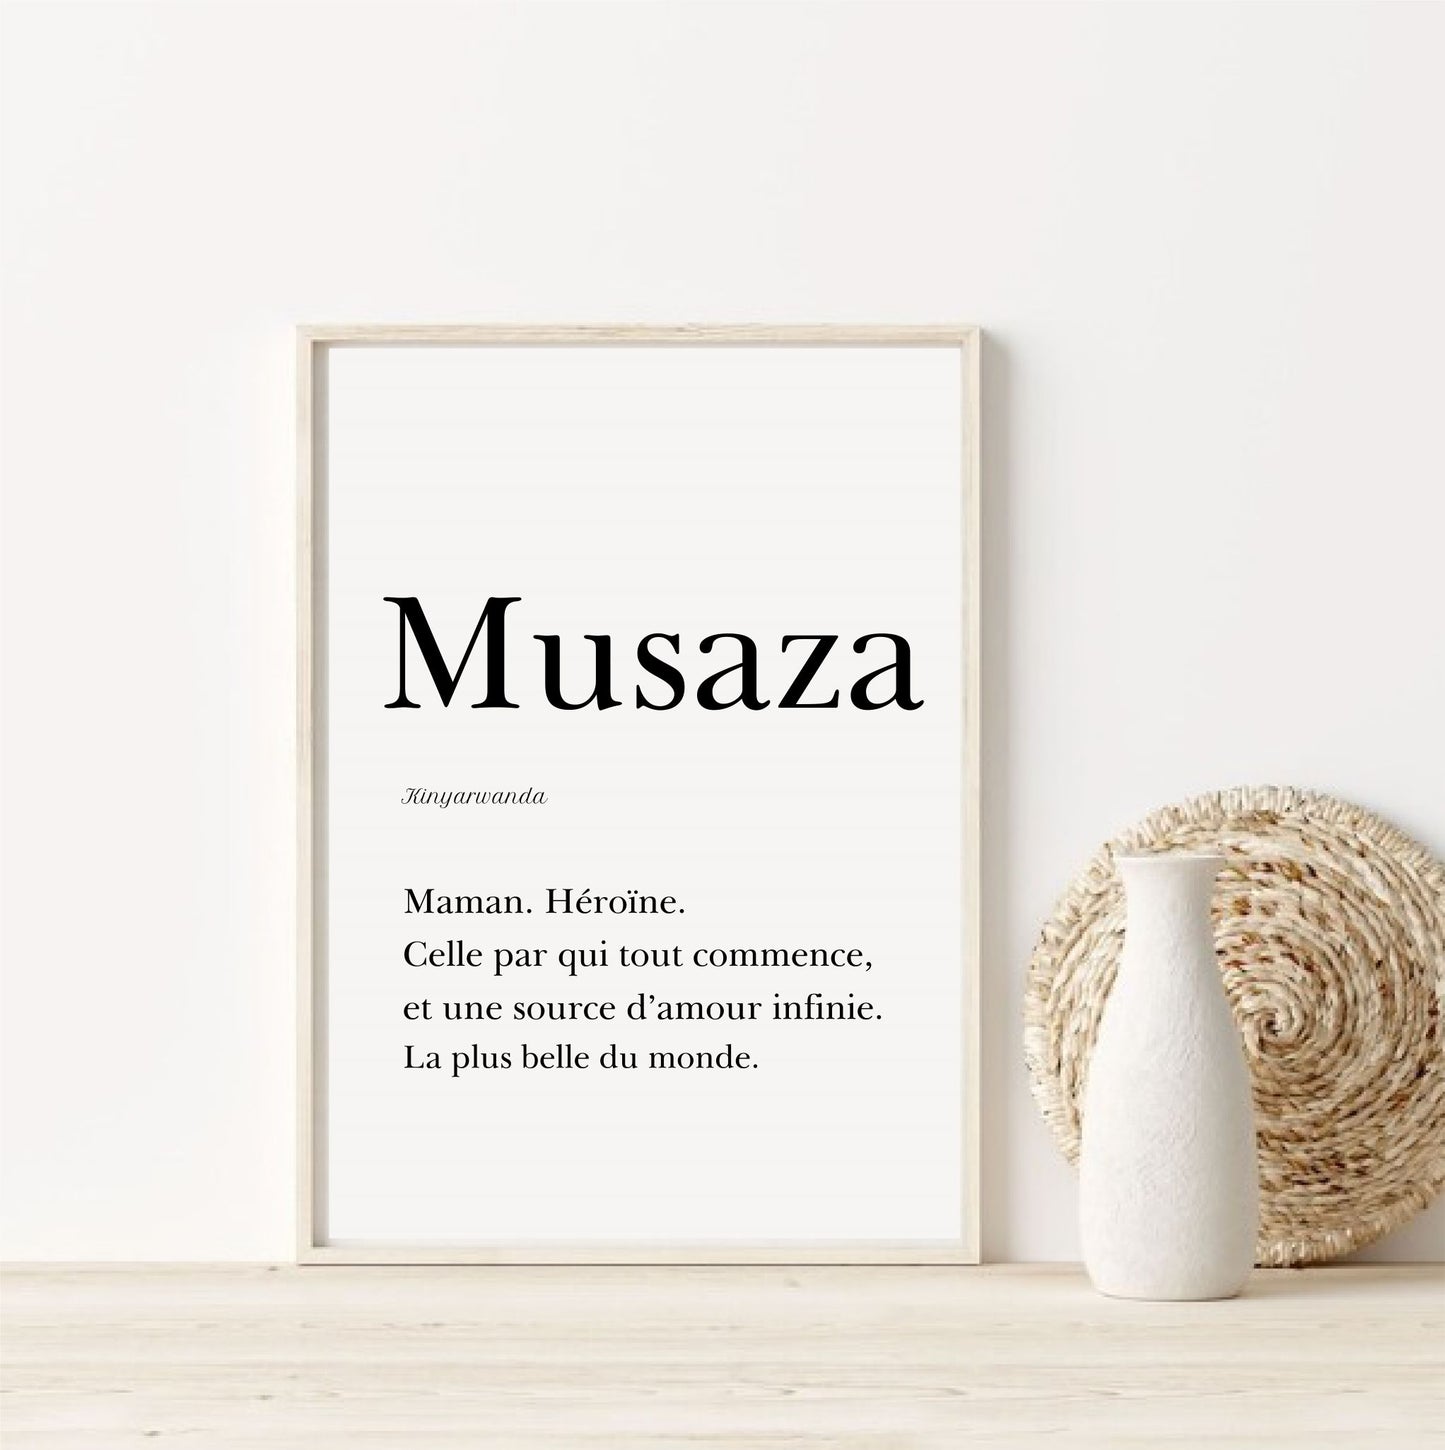 Mom in Kinyarwanda - "Musaza" 